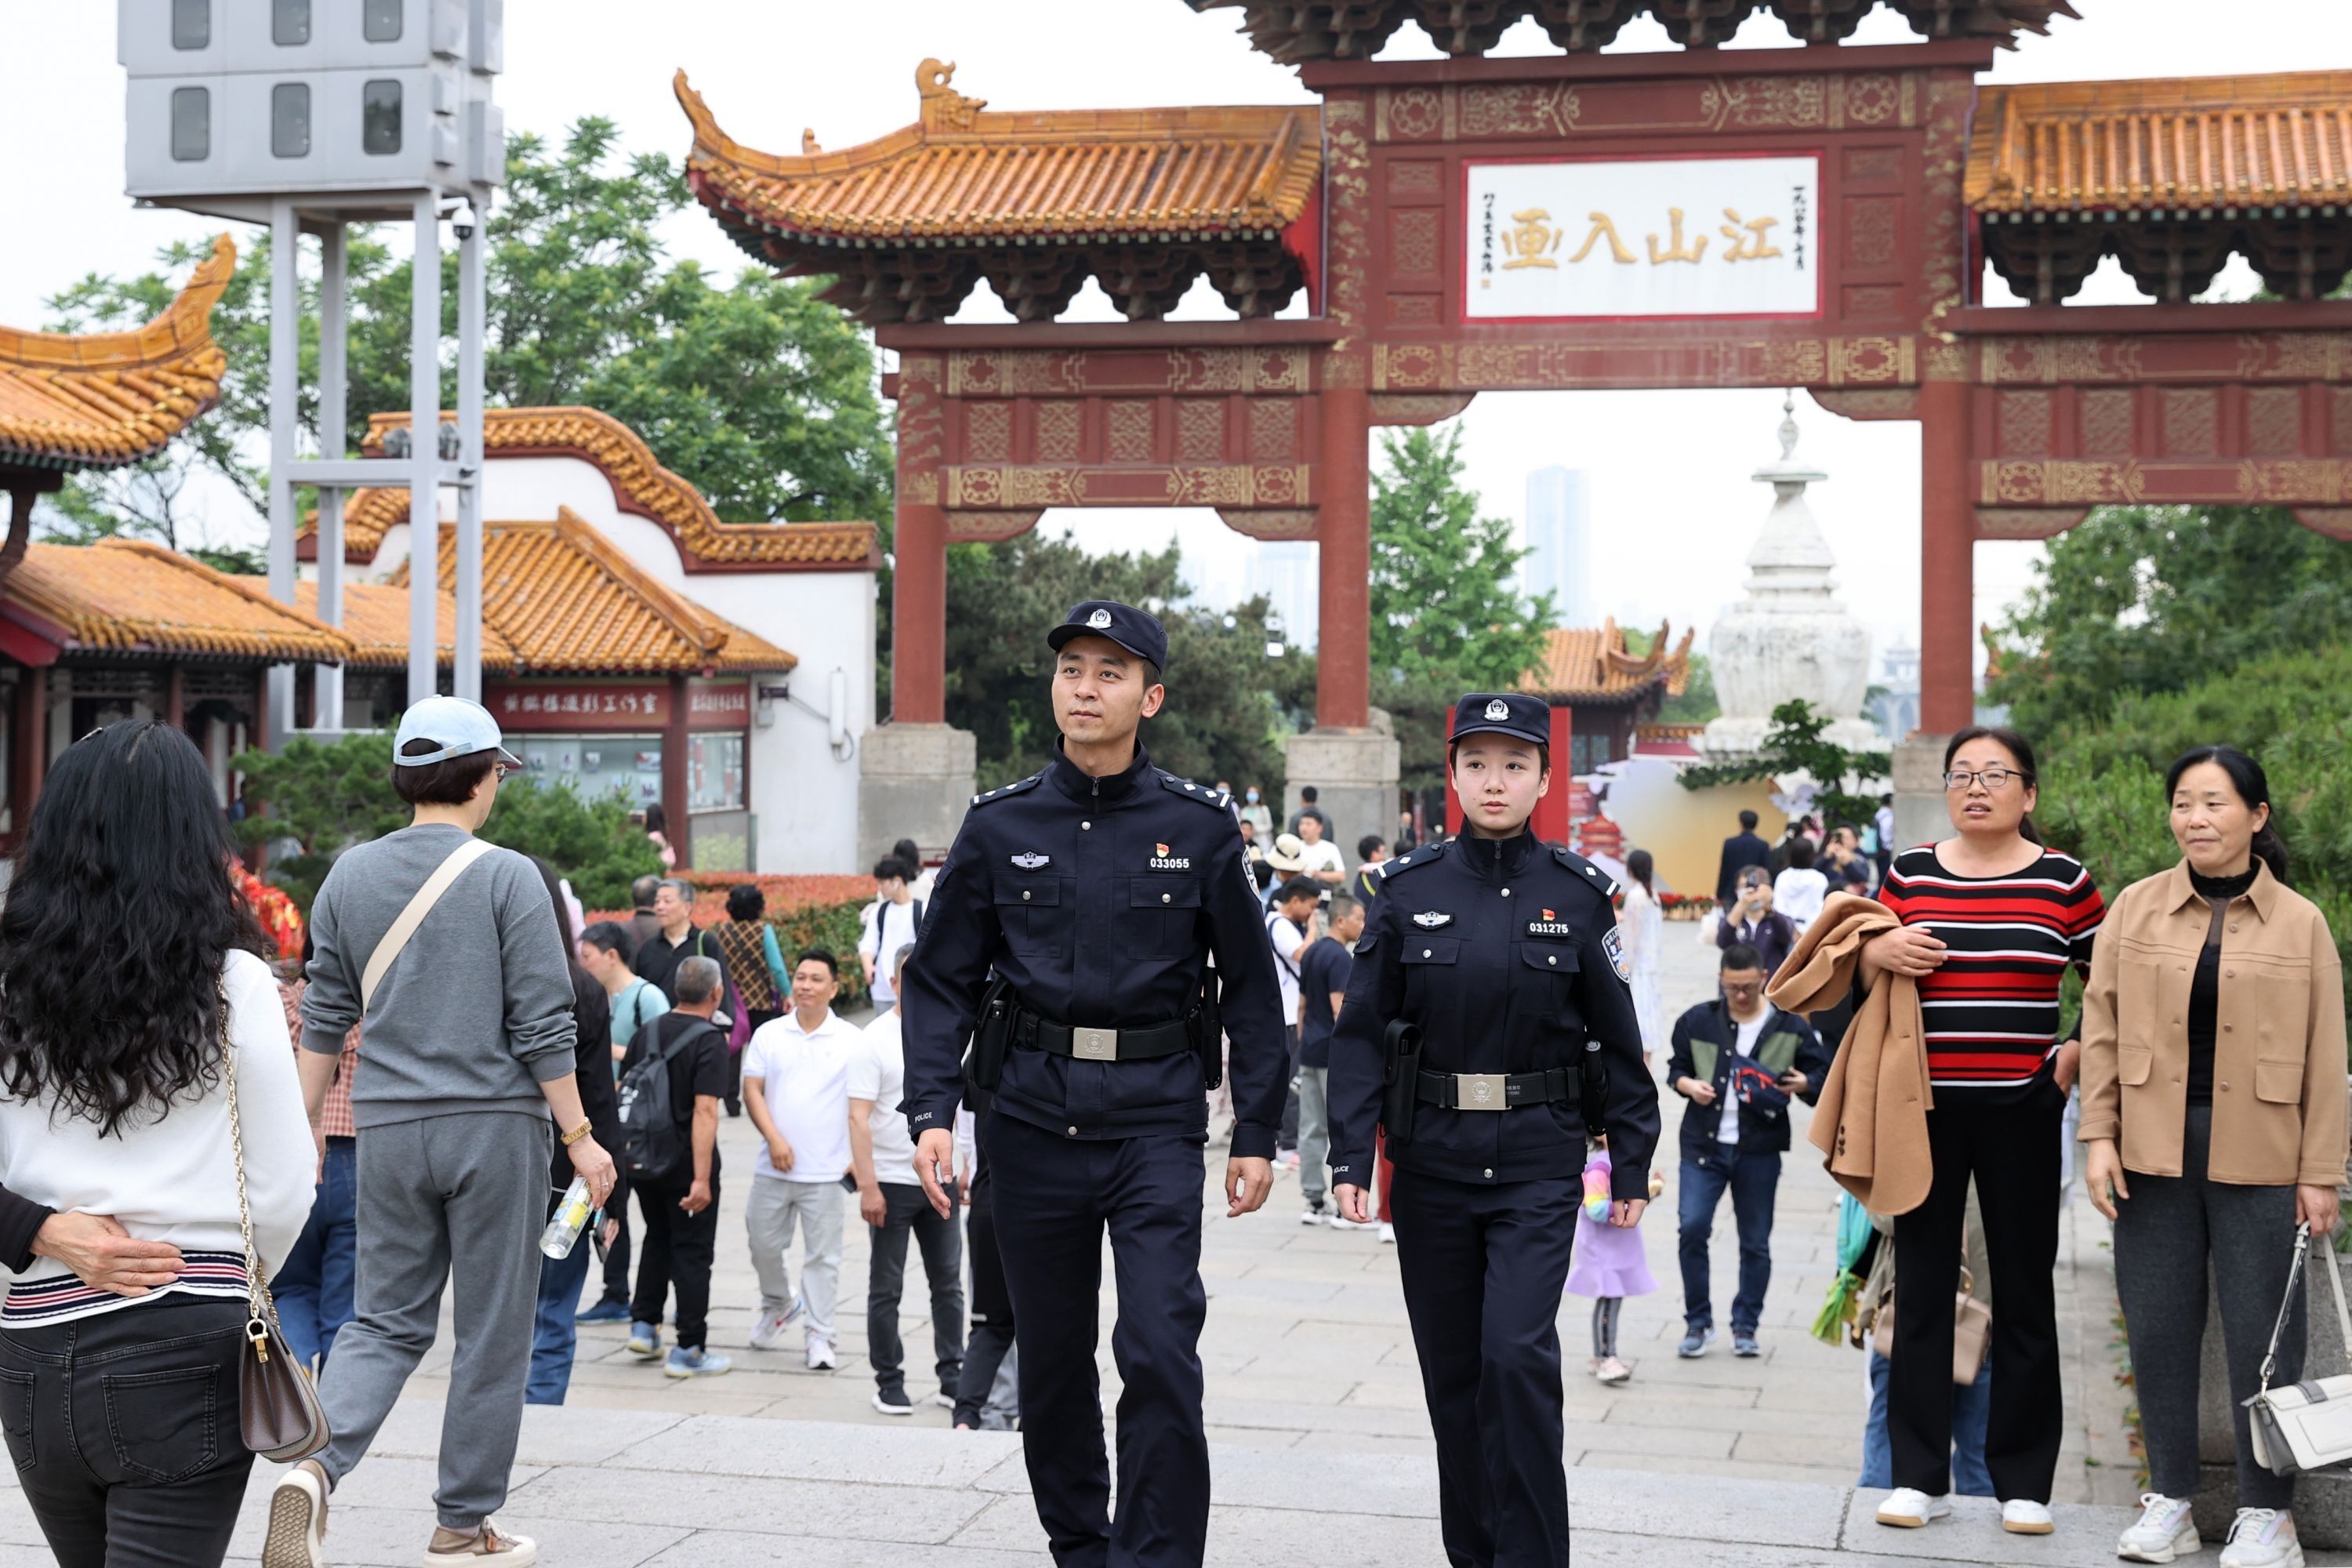 “一景点一专班”，武汉启动公安高等级勤务守护节日平安